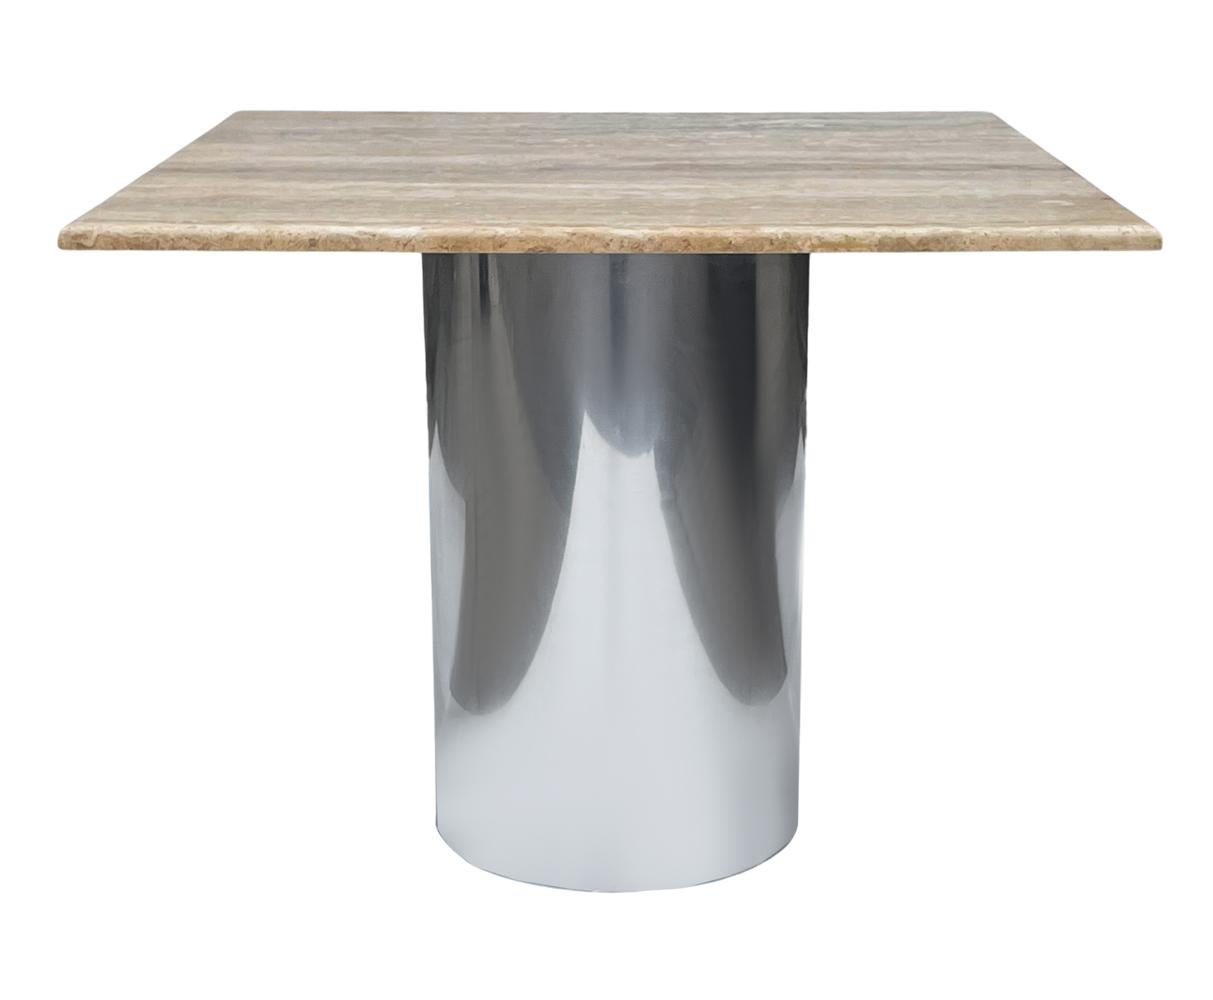 Une table de salle à manger moderne et simple en travertin italien, idéale pour les petits espaces. Il est doté d'une base en acier inoxydable poli et d'un plateau en travertin. En très bon état général.